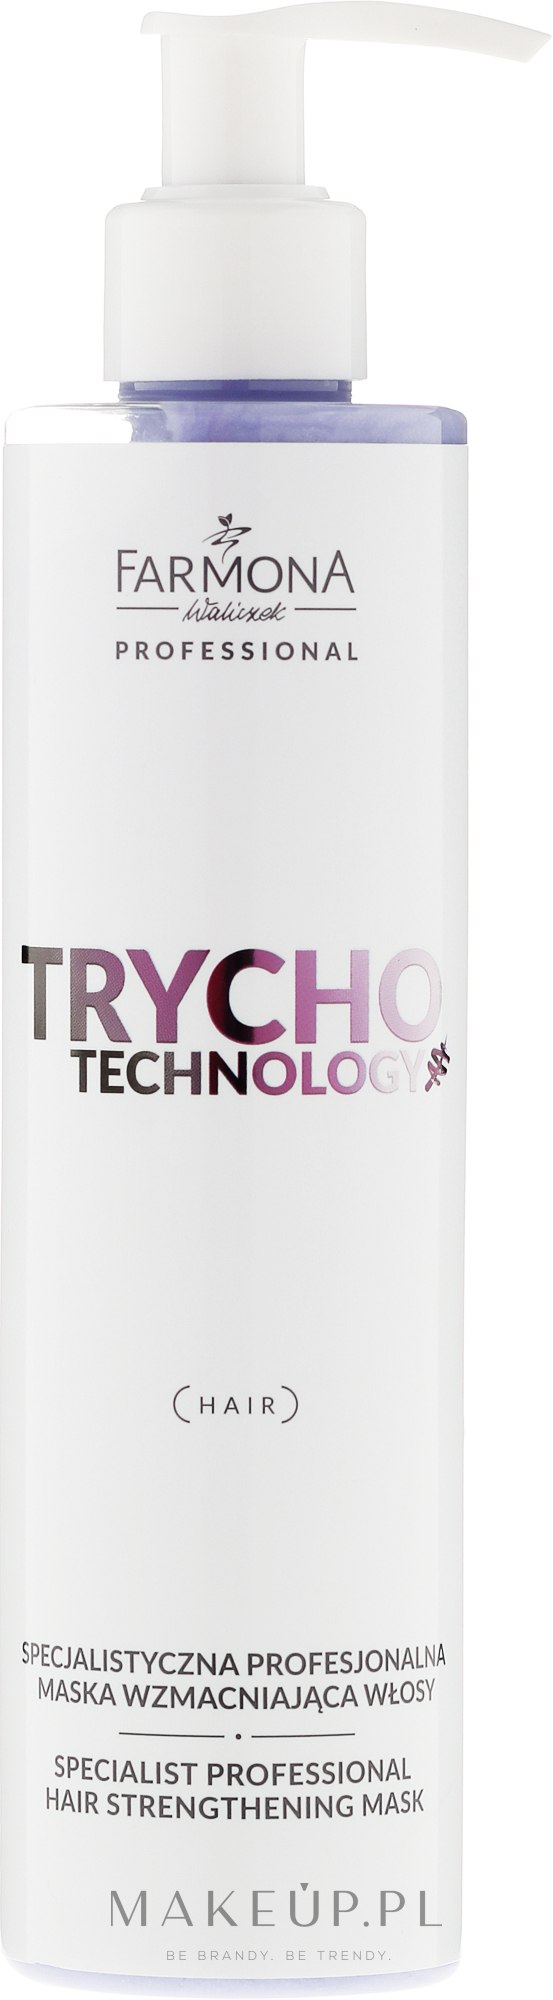 Specjalistyczna profesjonalna maska wzmacniająca włosy - Farmona Professional Trycho Technology — Zdjęcie 250 ml